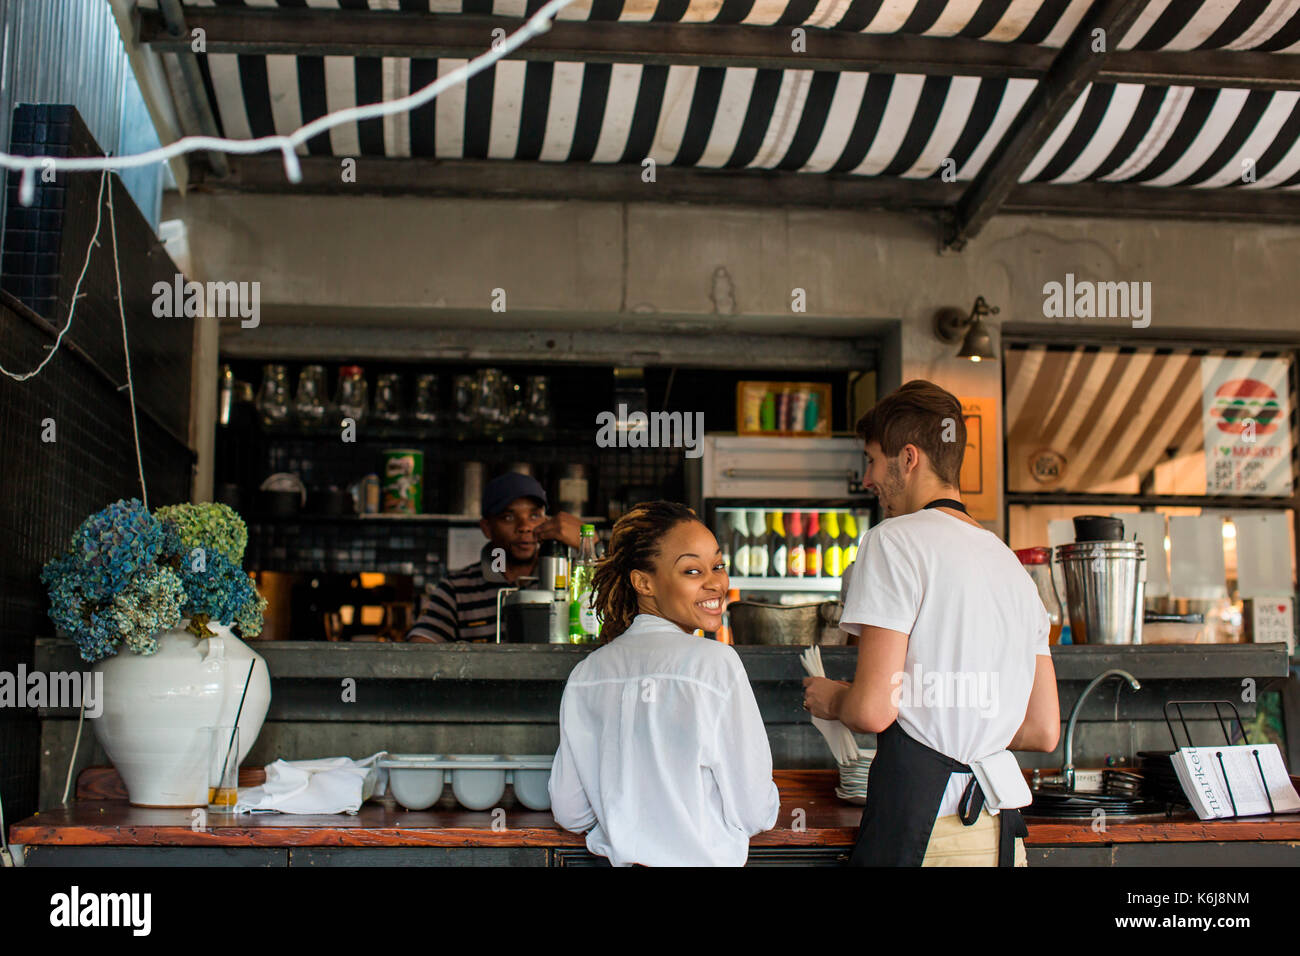 Los camareros esperan en un bar de jugos en el restaurante, Durban, KwaZulu-Natal, Sudáfrica Foto de stock